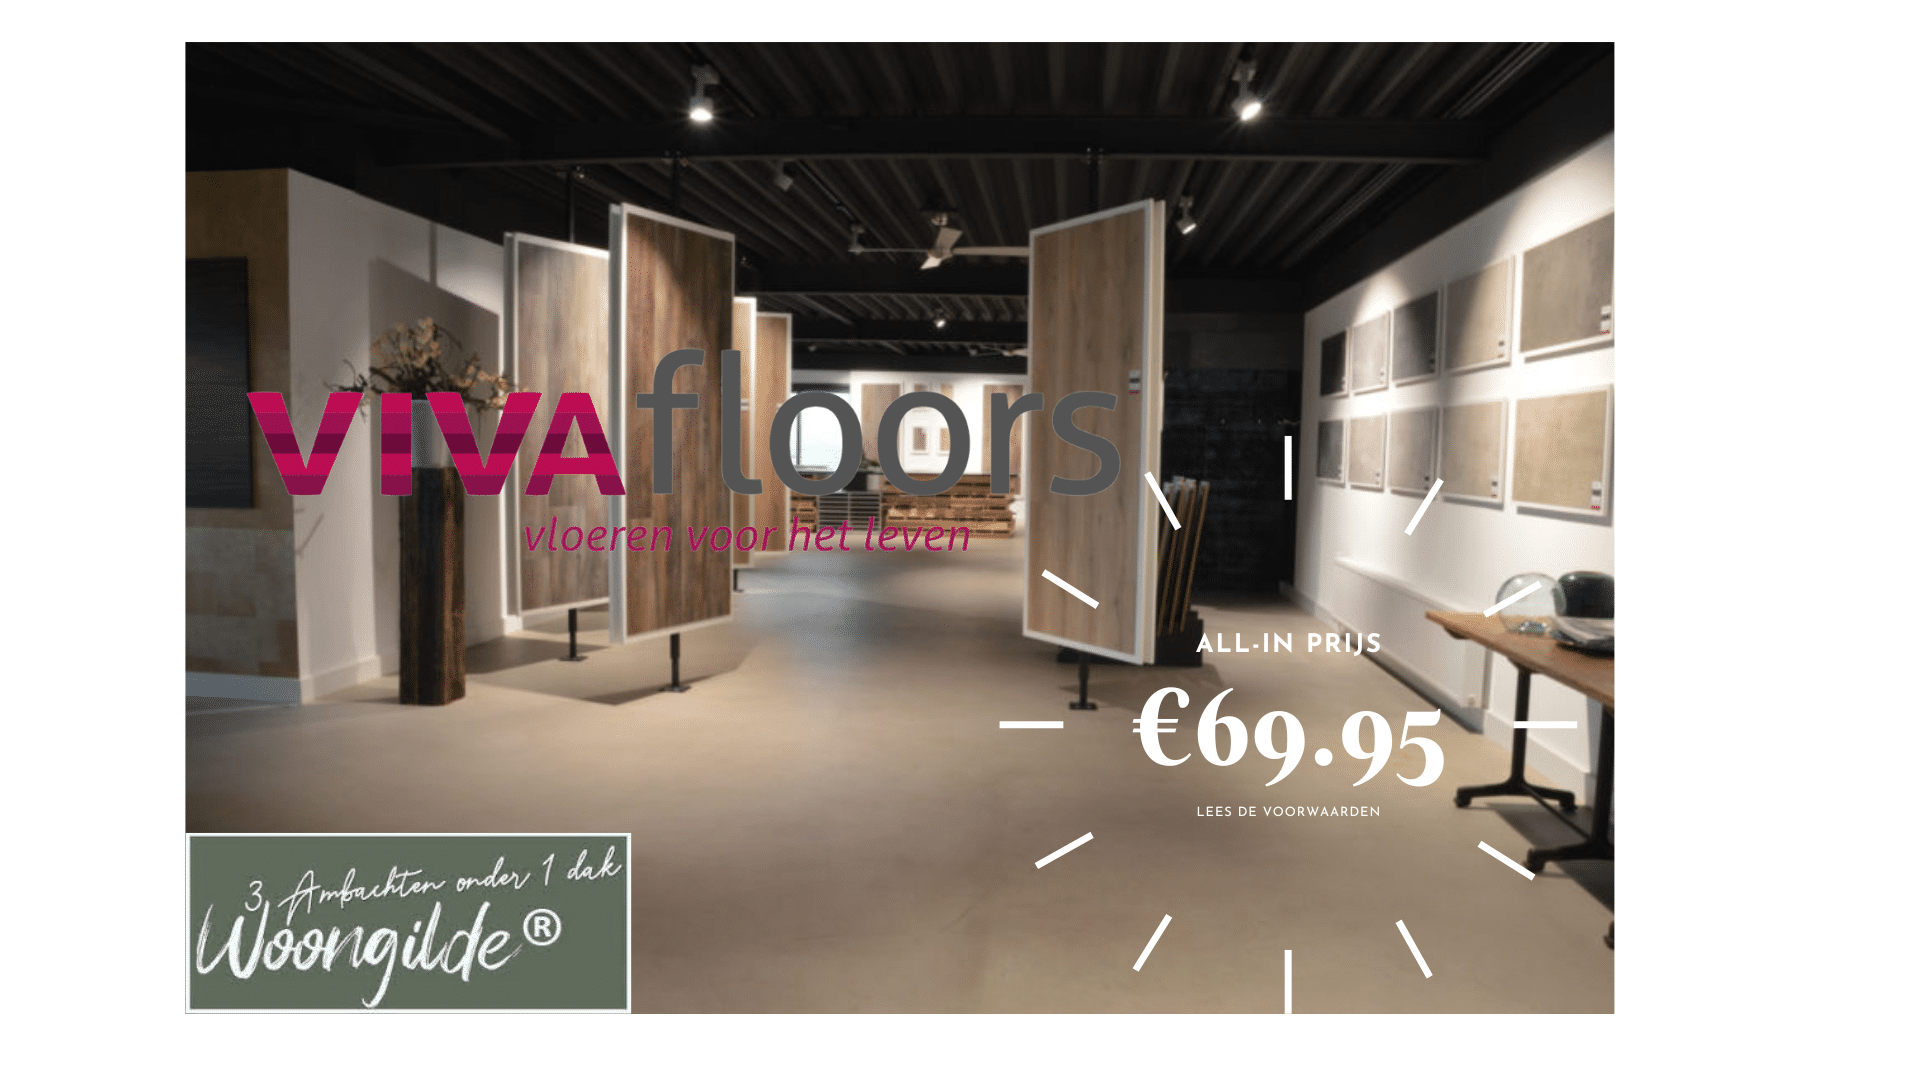 Vivafloors All-In voor €69.95p/m²